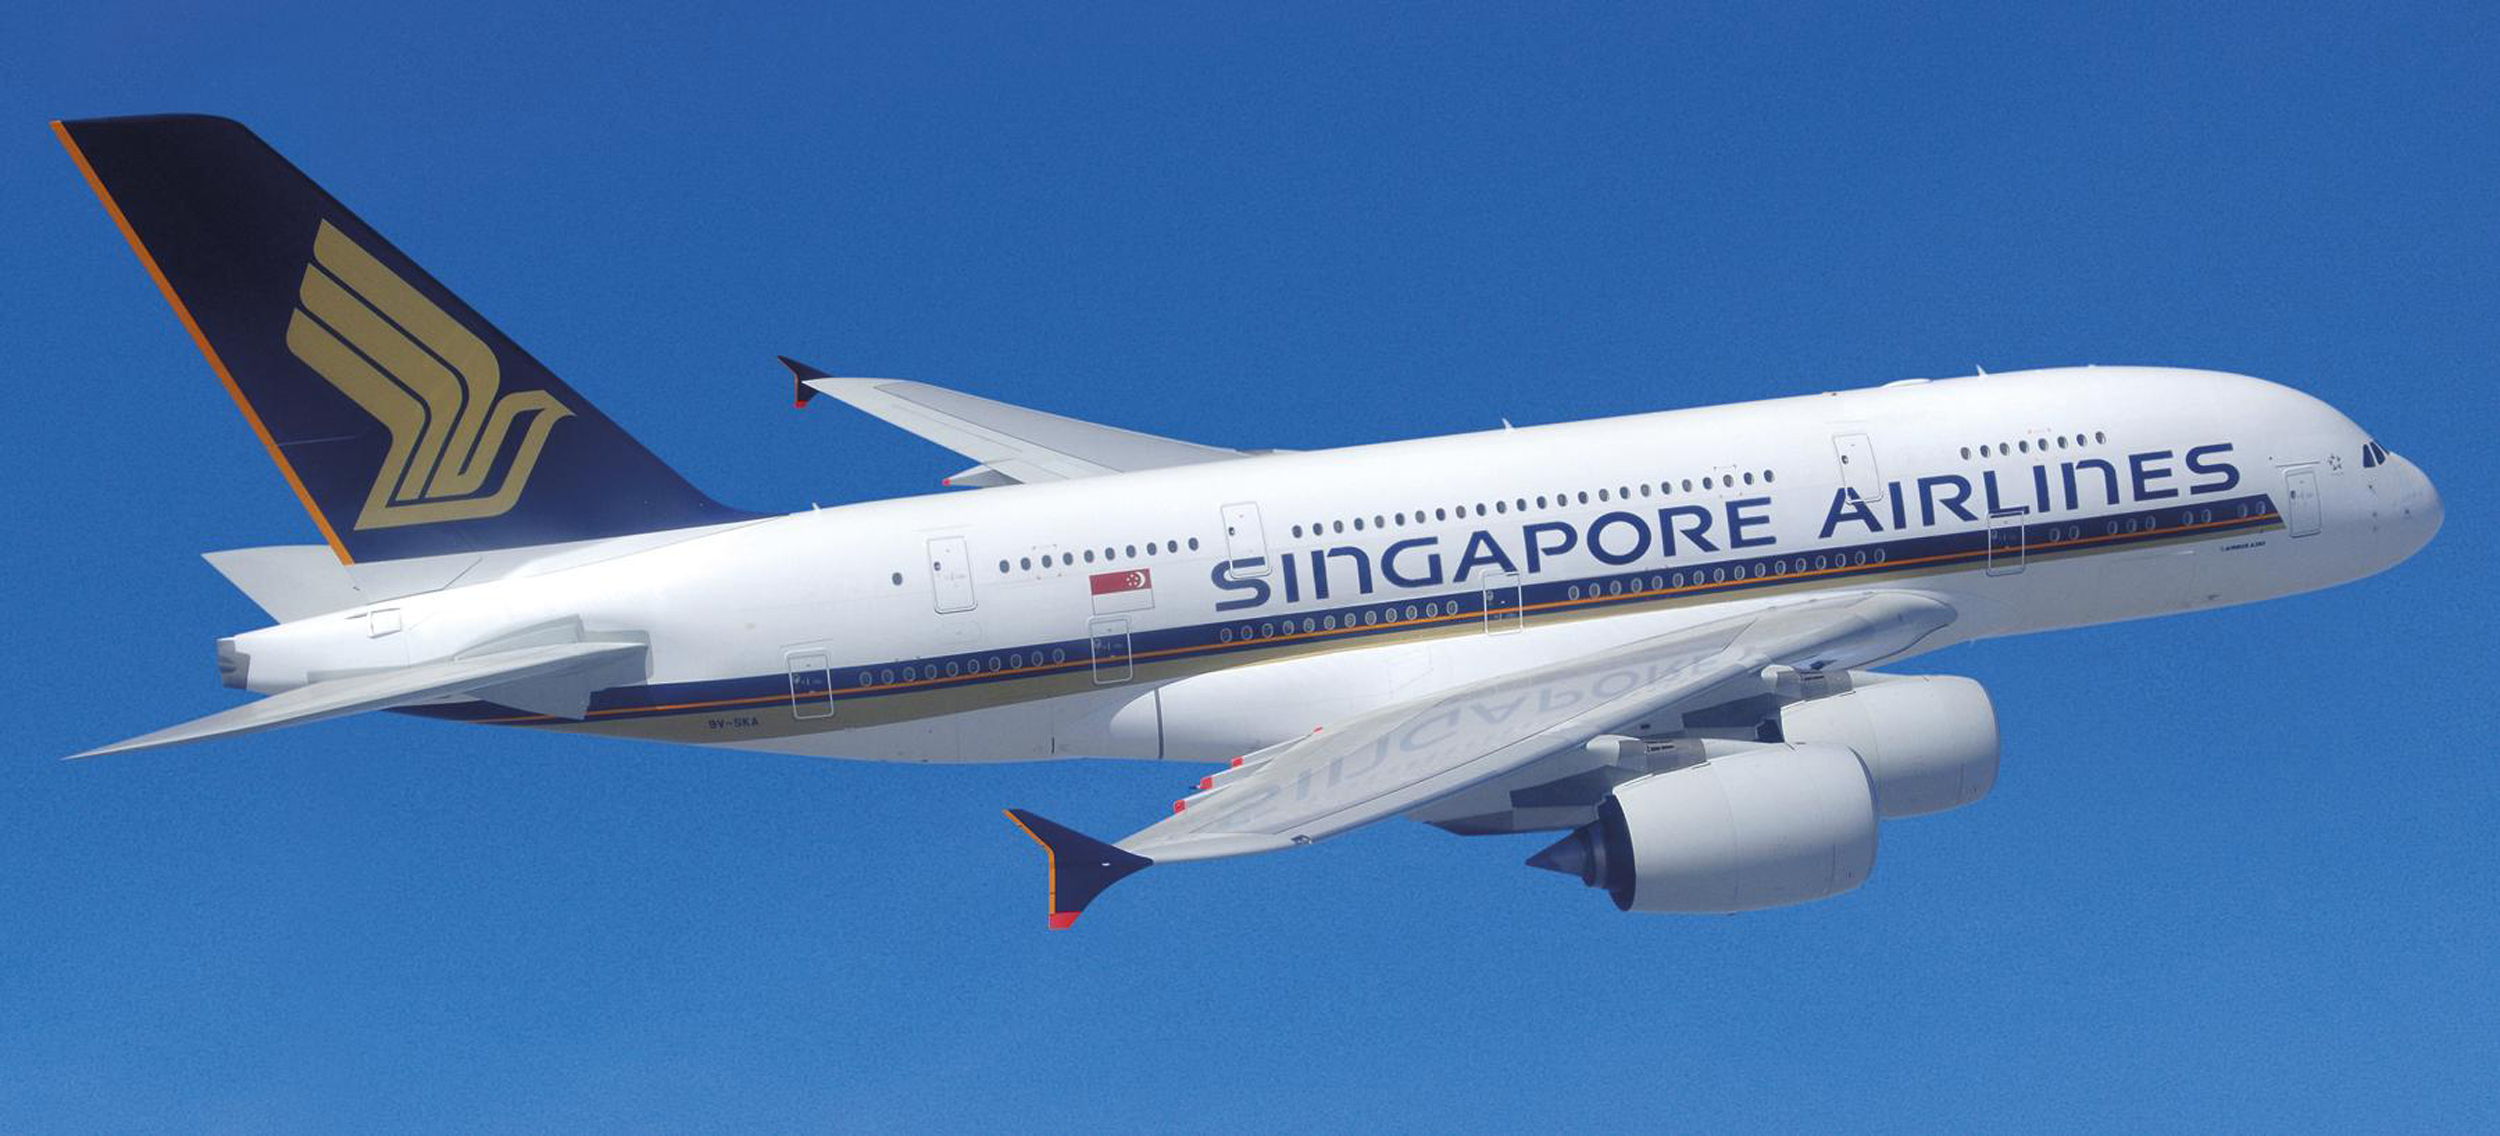 Stanchi di viaggiare in spazi ristretti? Allora scegliete la comodità con le nuove suites della Singapore Airlines.